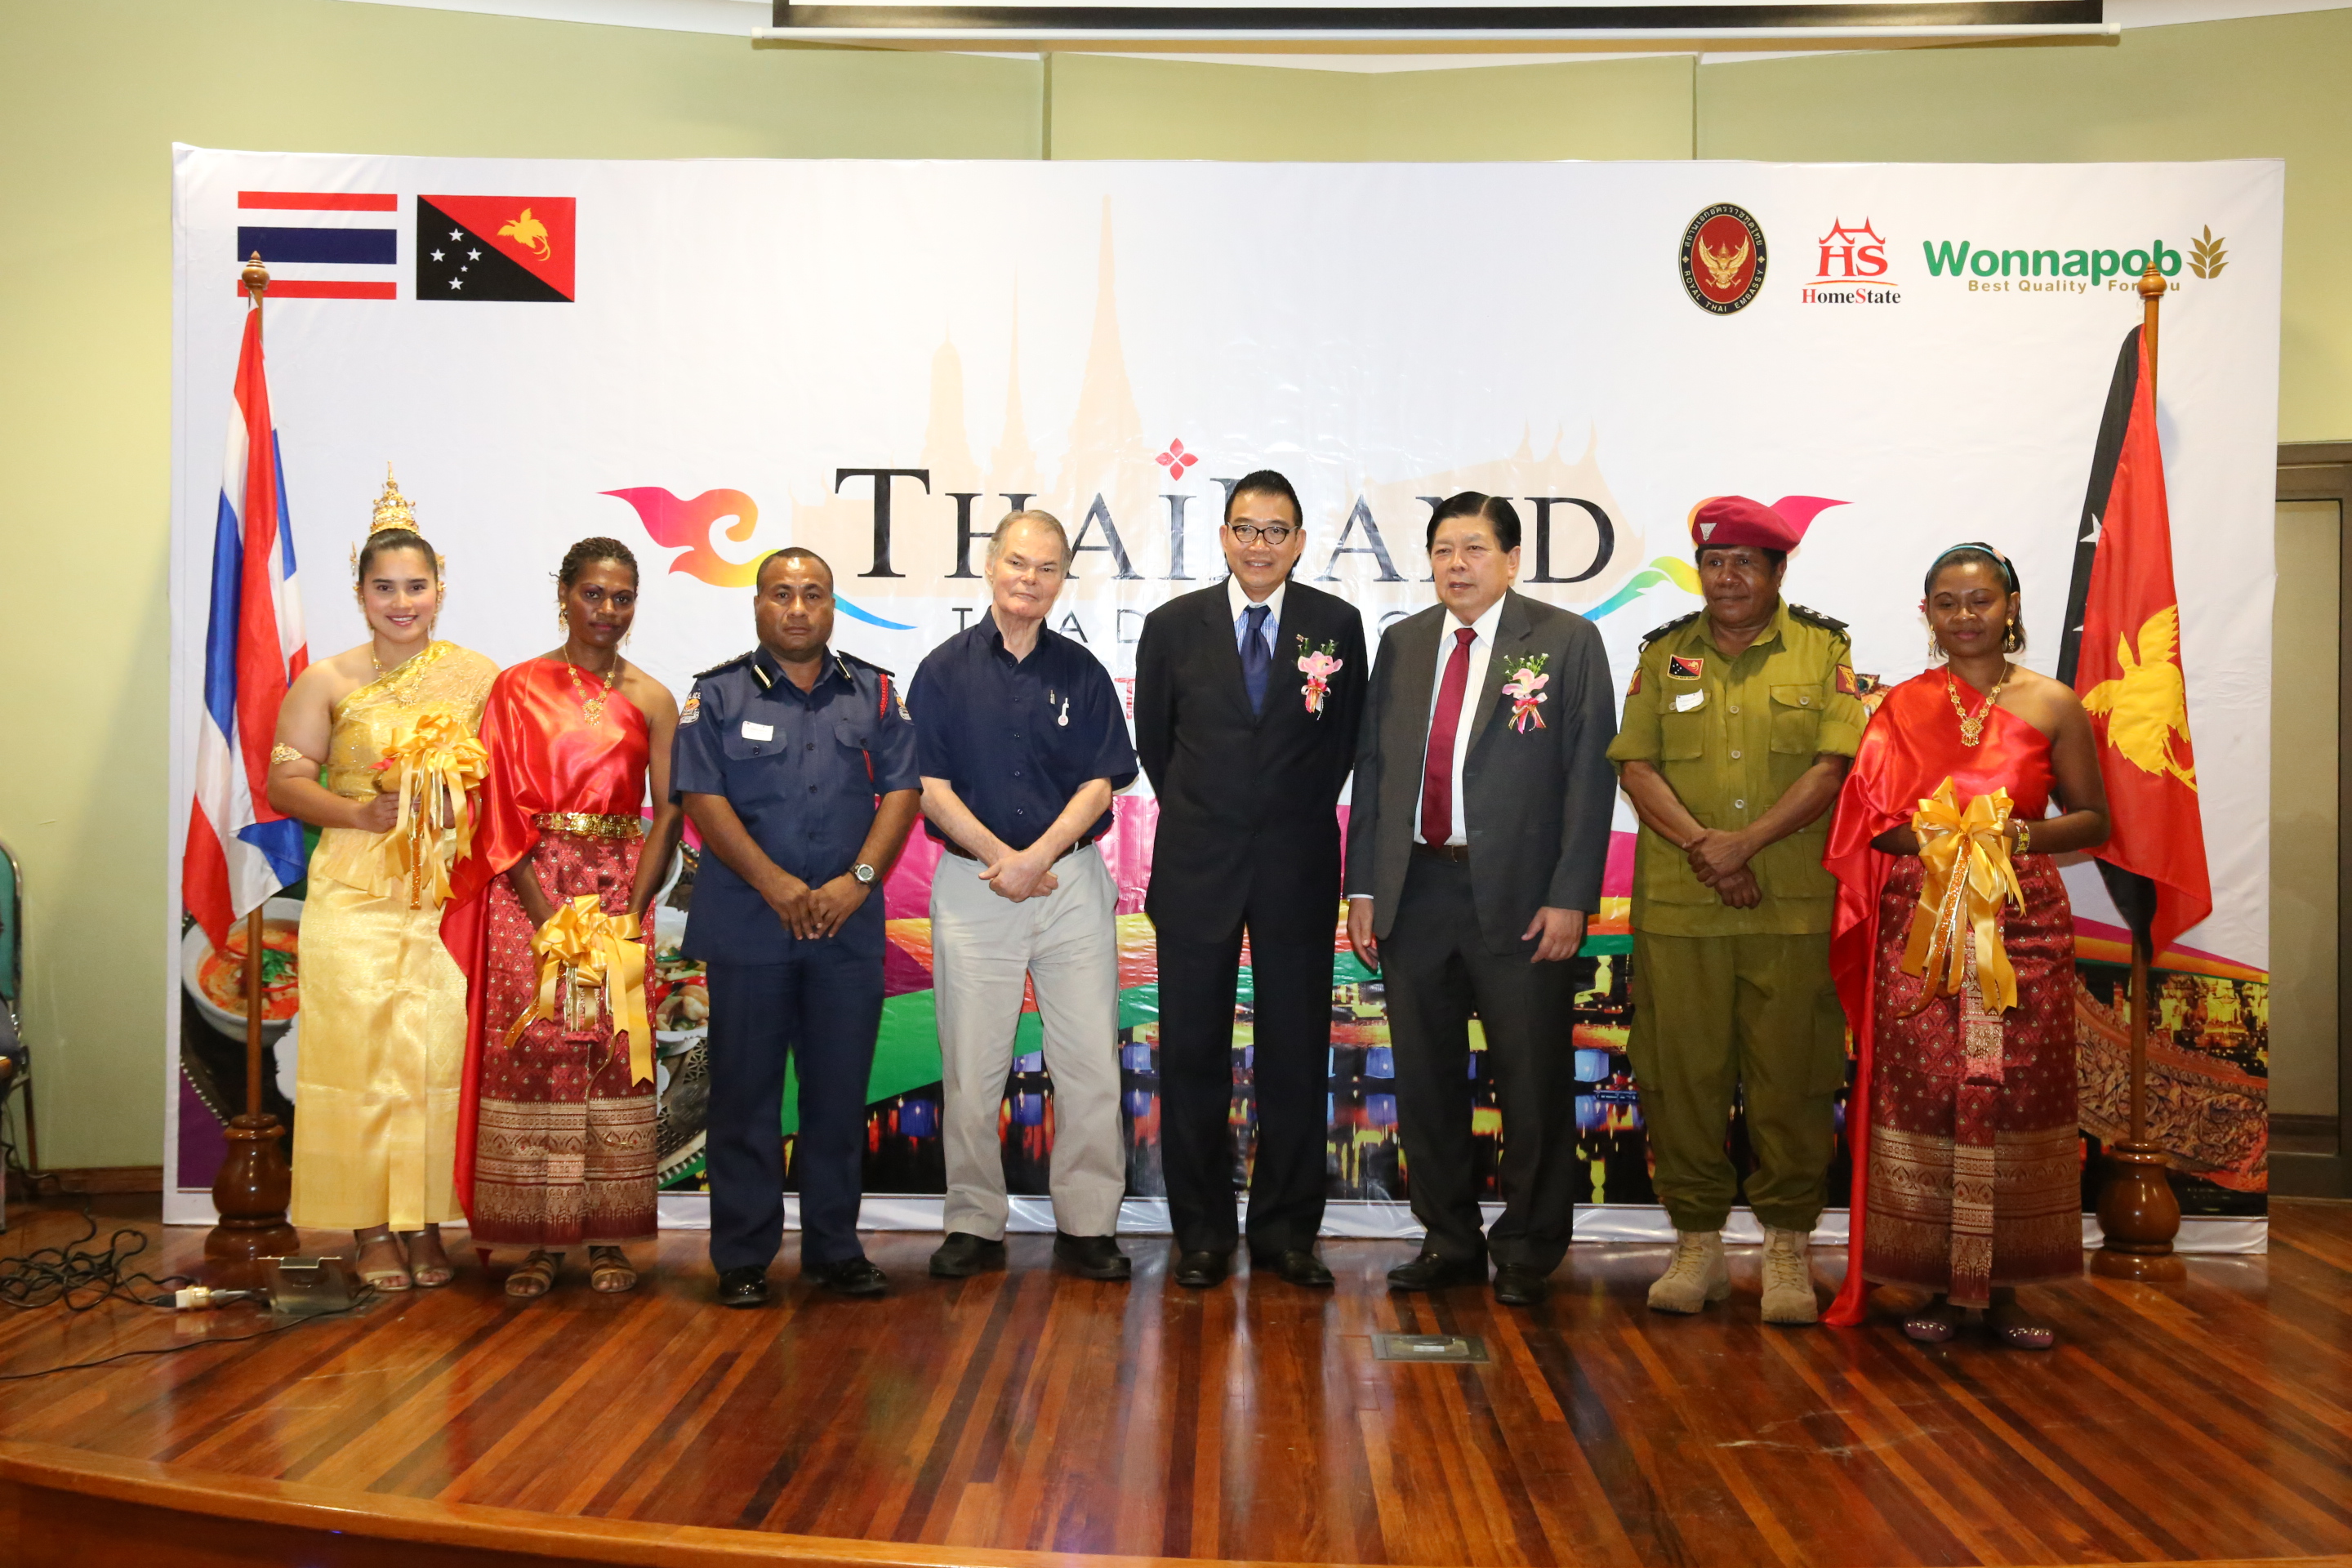 Thailand Trade Show 2014 of Papua New Guinea